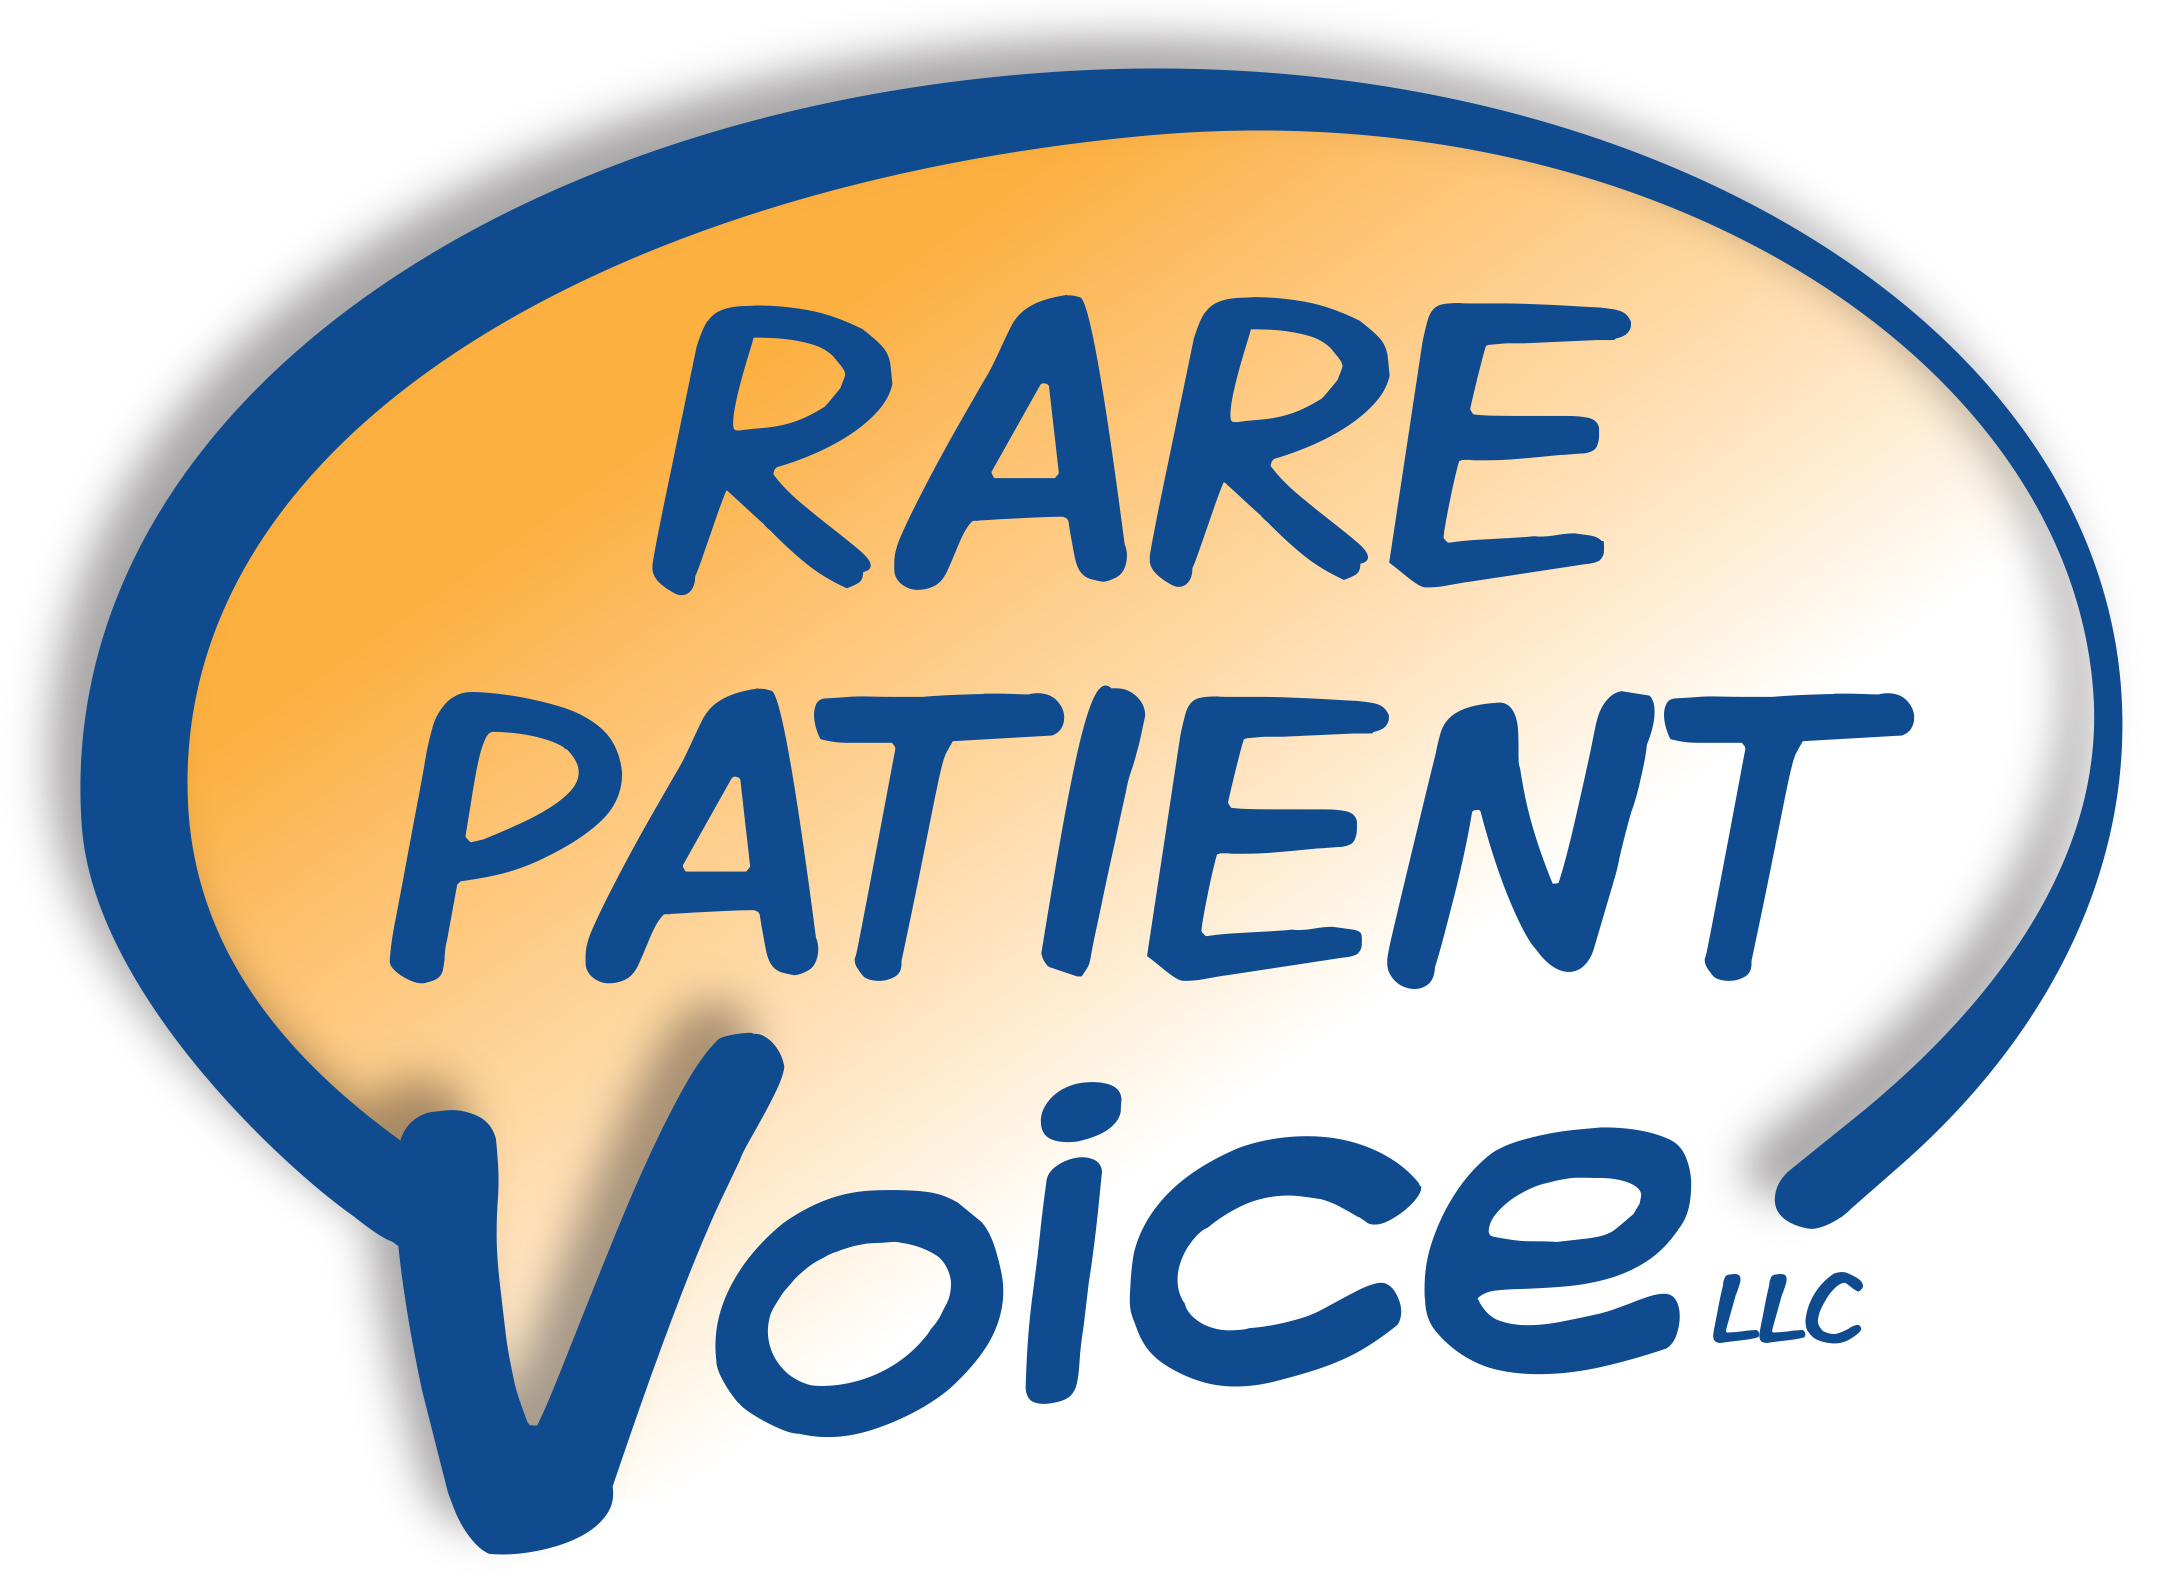 mdm rare patient voice logo